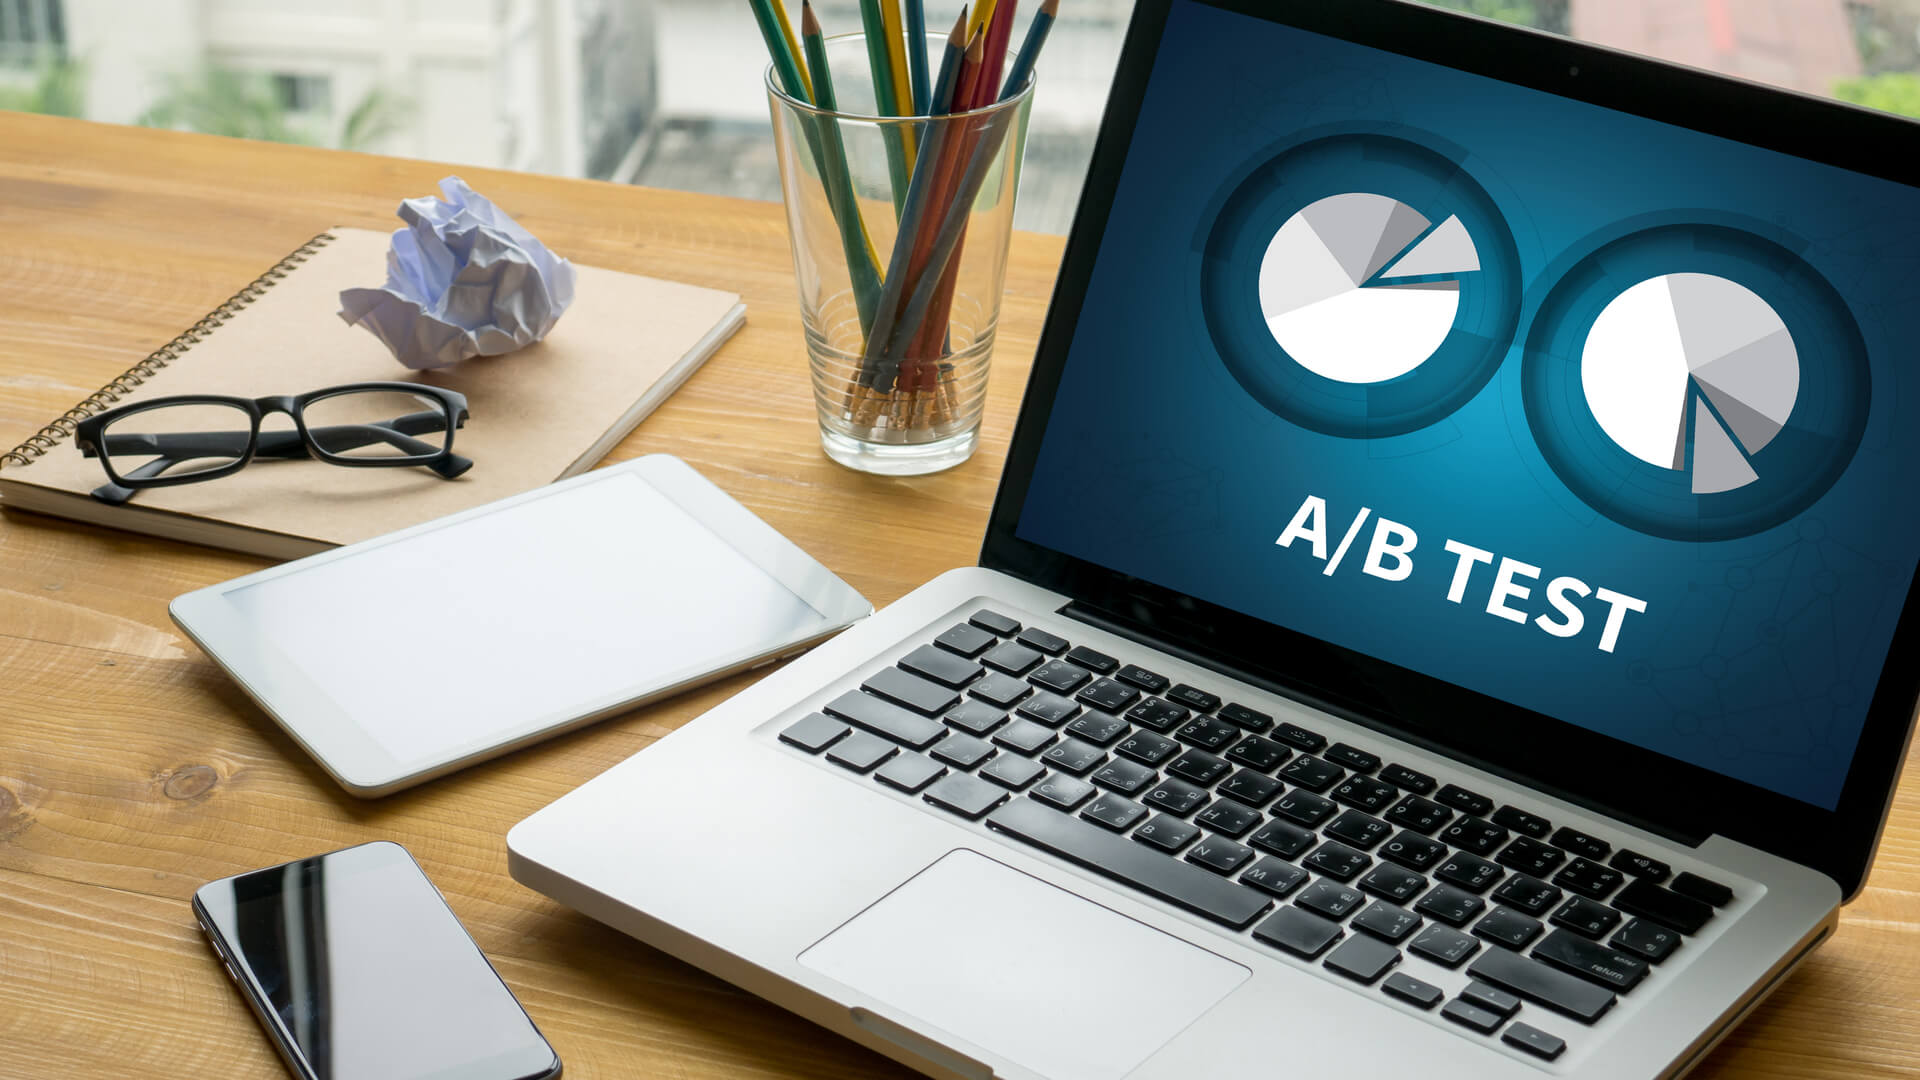 Microsoft Advertising lanza la herramienta de pruebas A / B de experimentos a nivel mundial